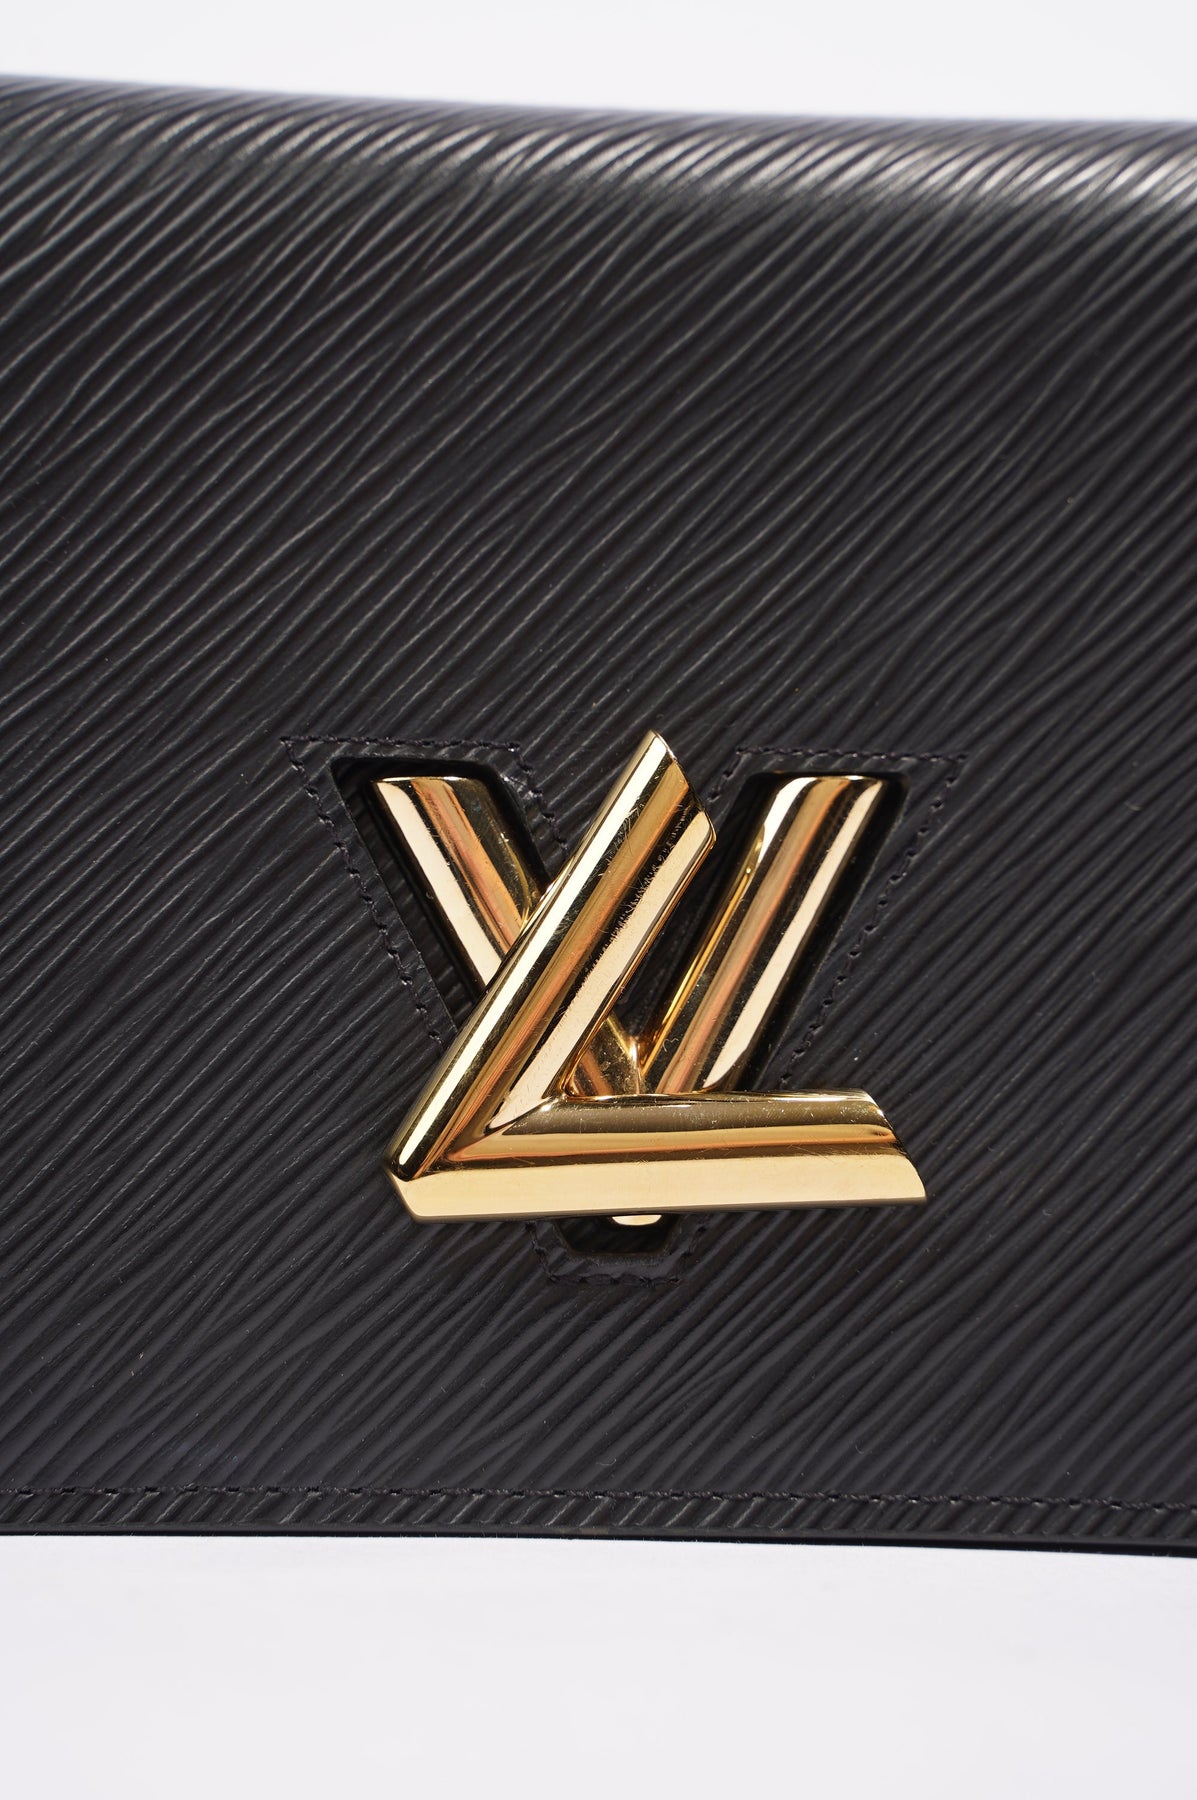 BRAND NEW Authentic Louis Vuitton Black Electric Epi Twist MM Chain Bag